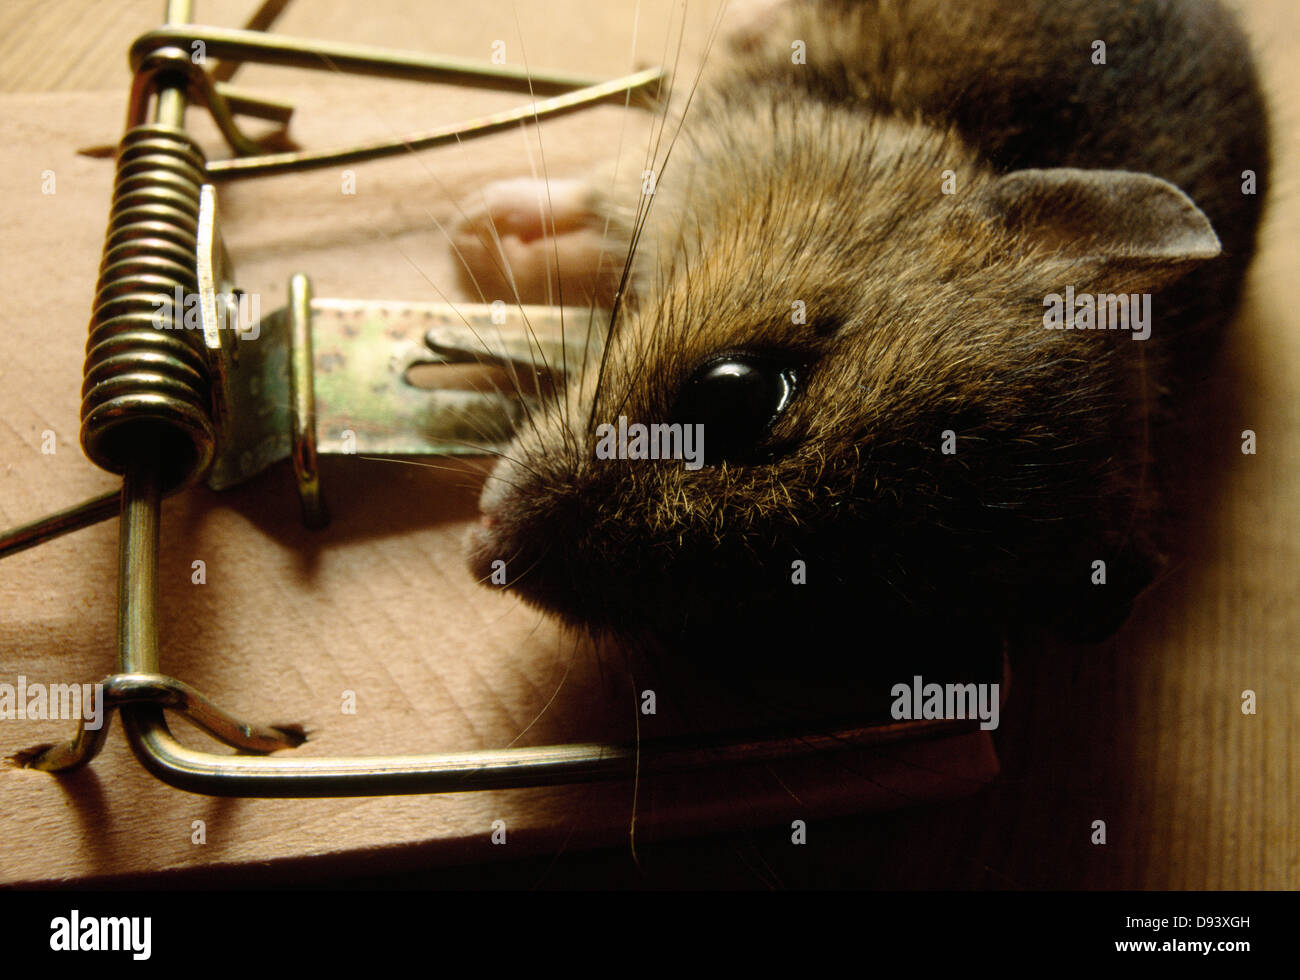 Mejor trampa para ratones fotografías e imágenes de alta resolución - Alamy